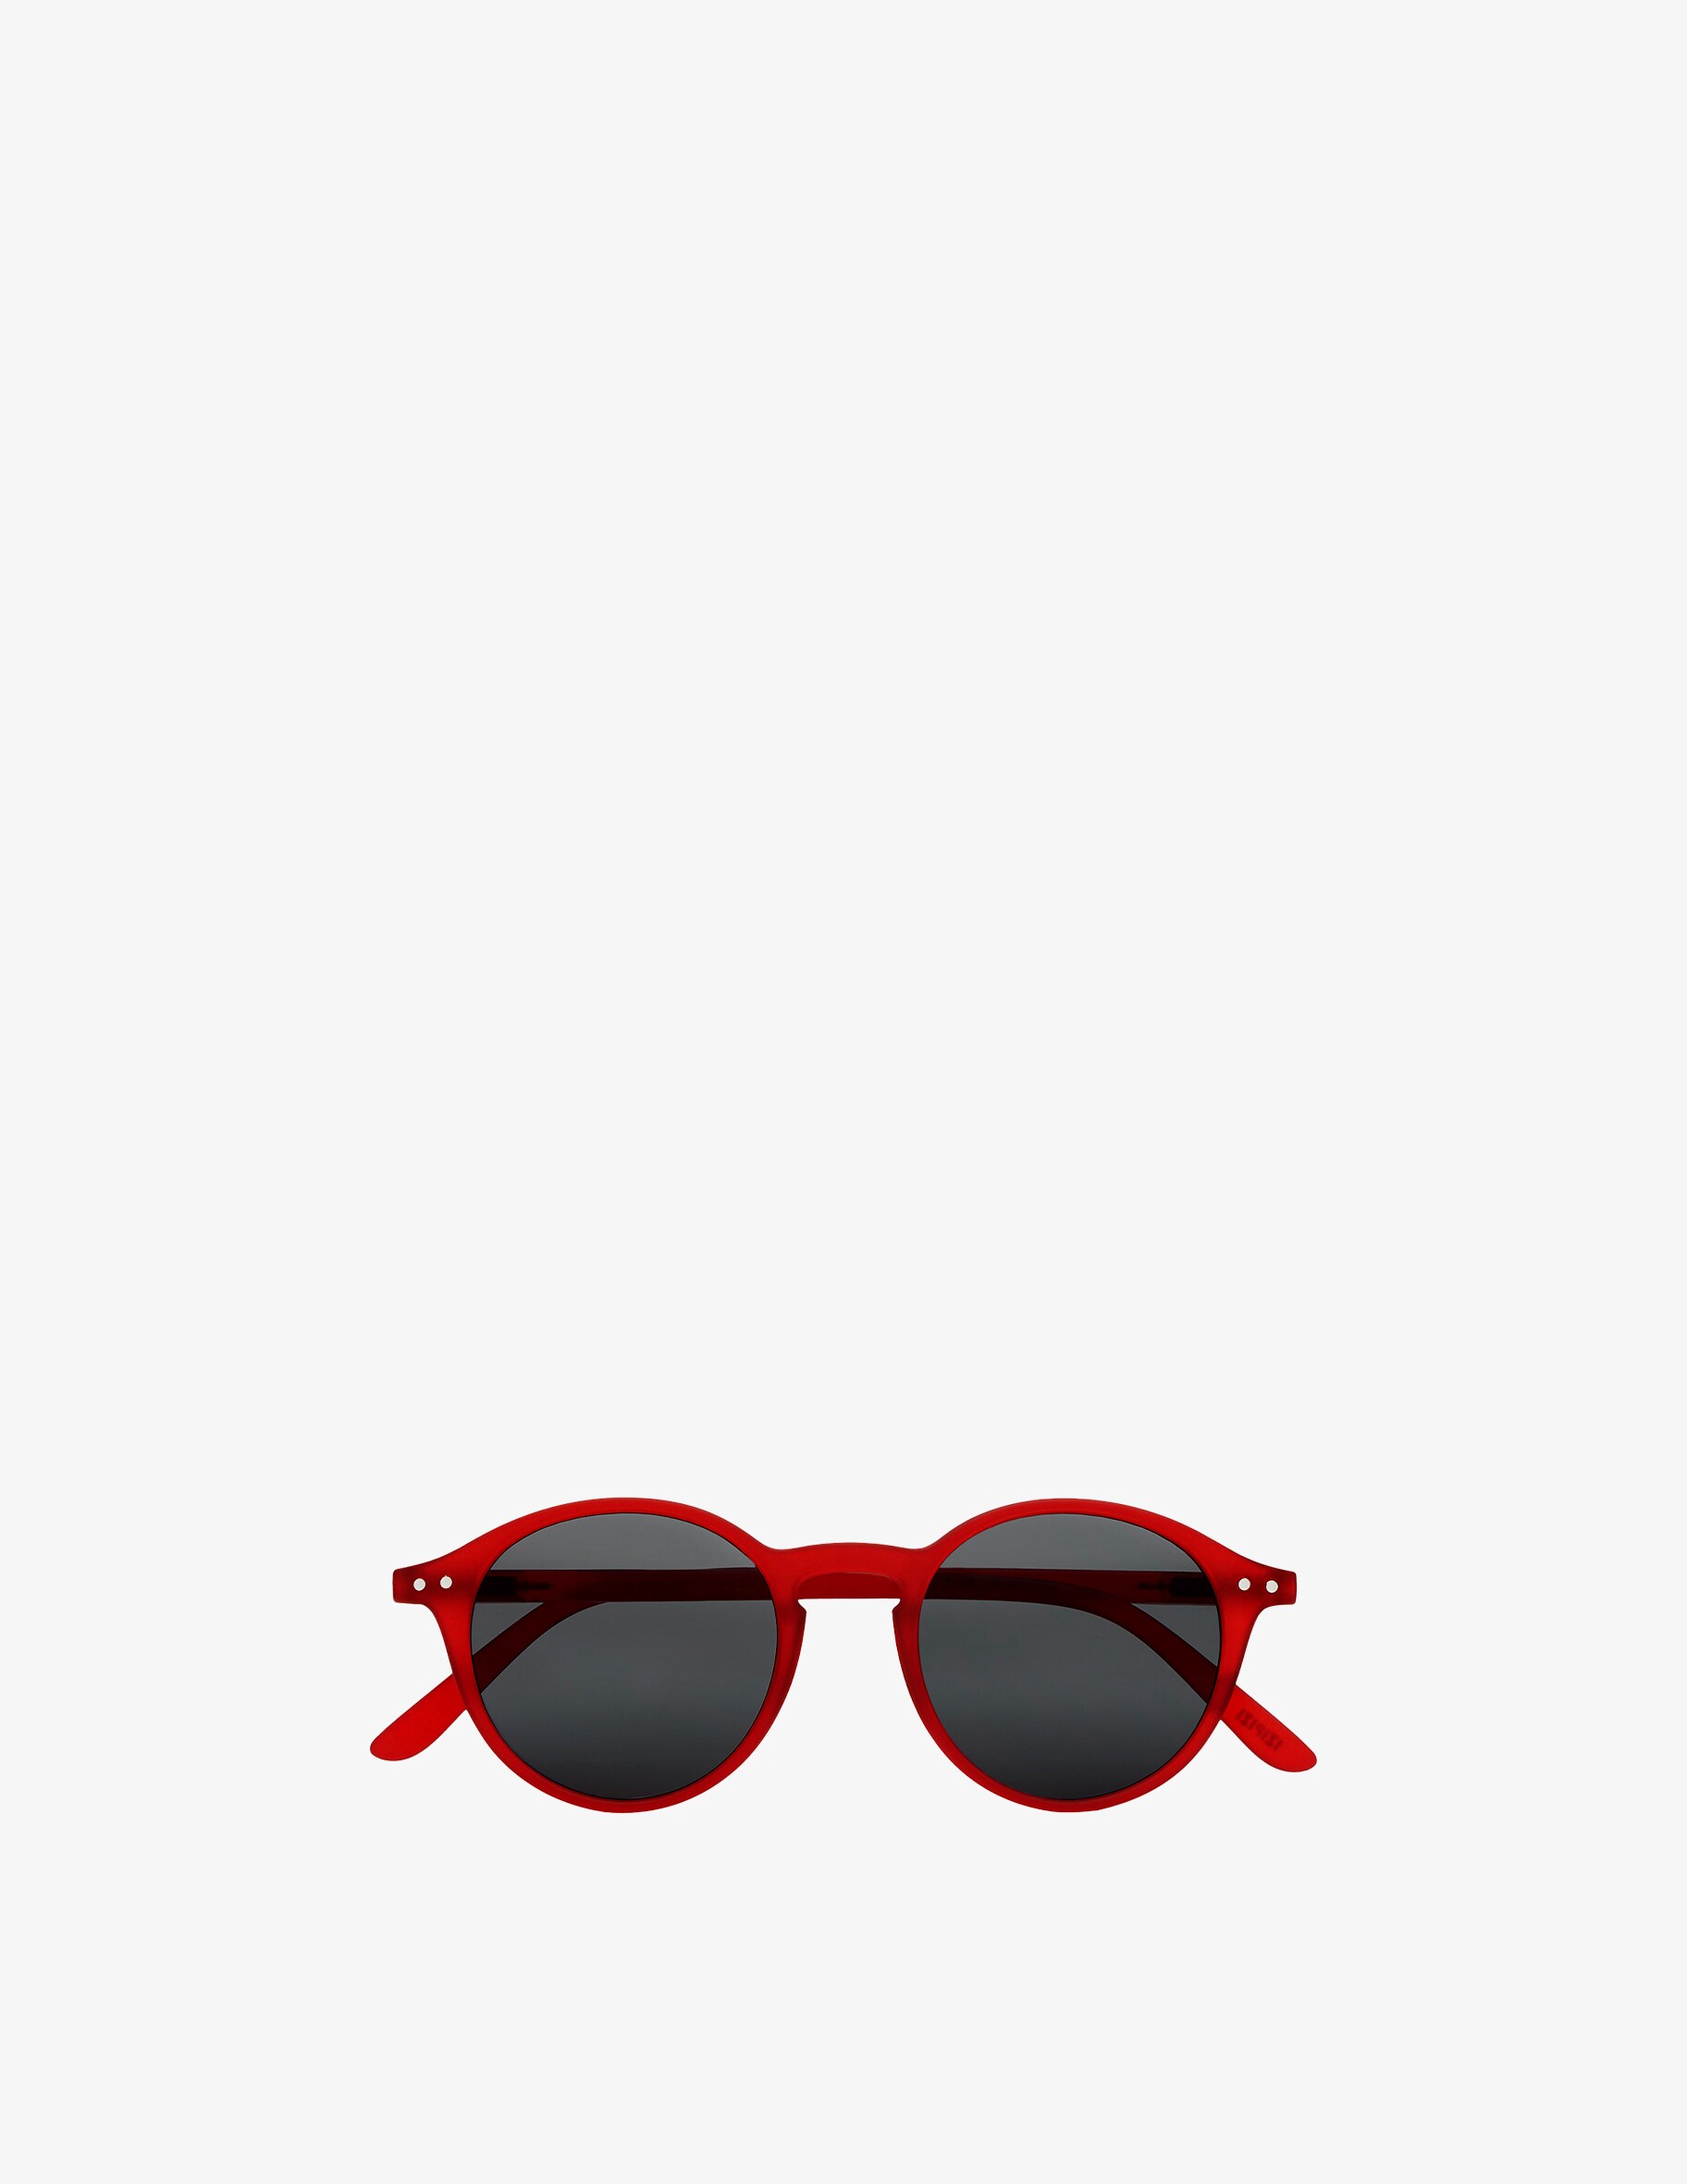 очки izipizi оправа d светло черепаший Солнцезащитные очки Модель #D Красные Izipizi